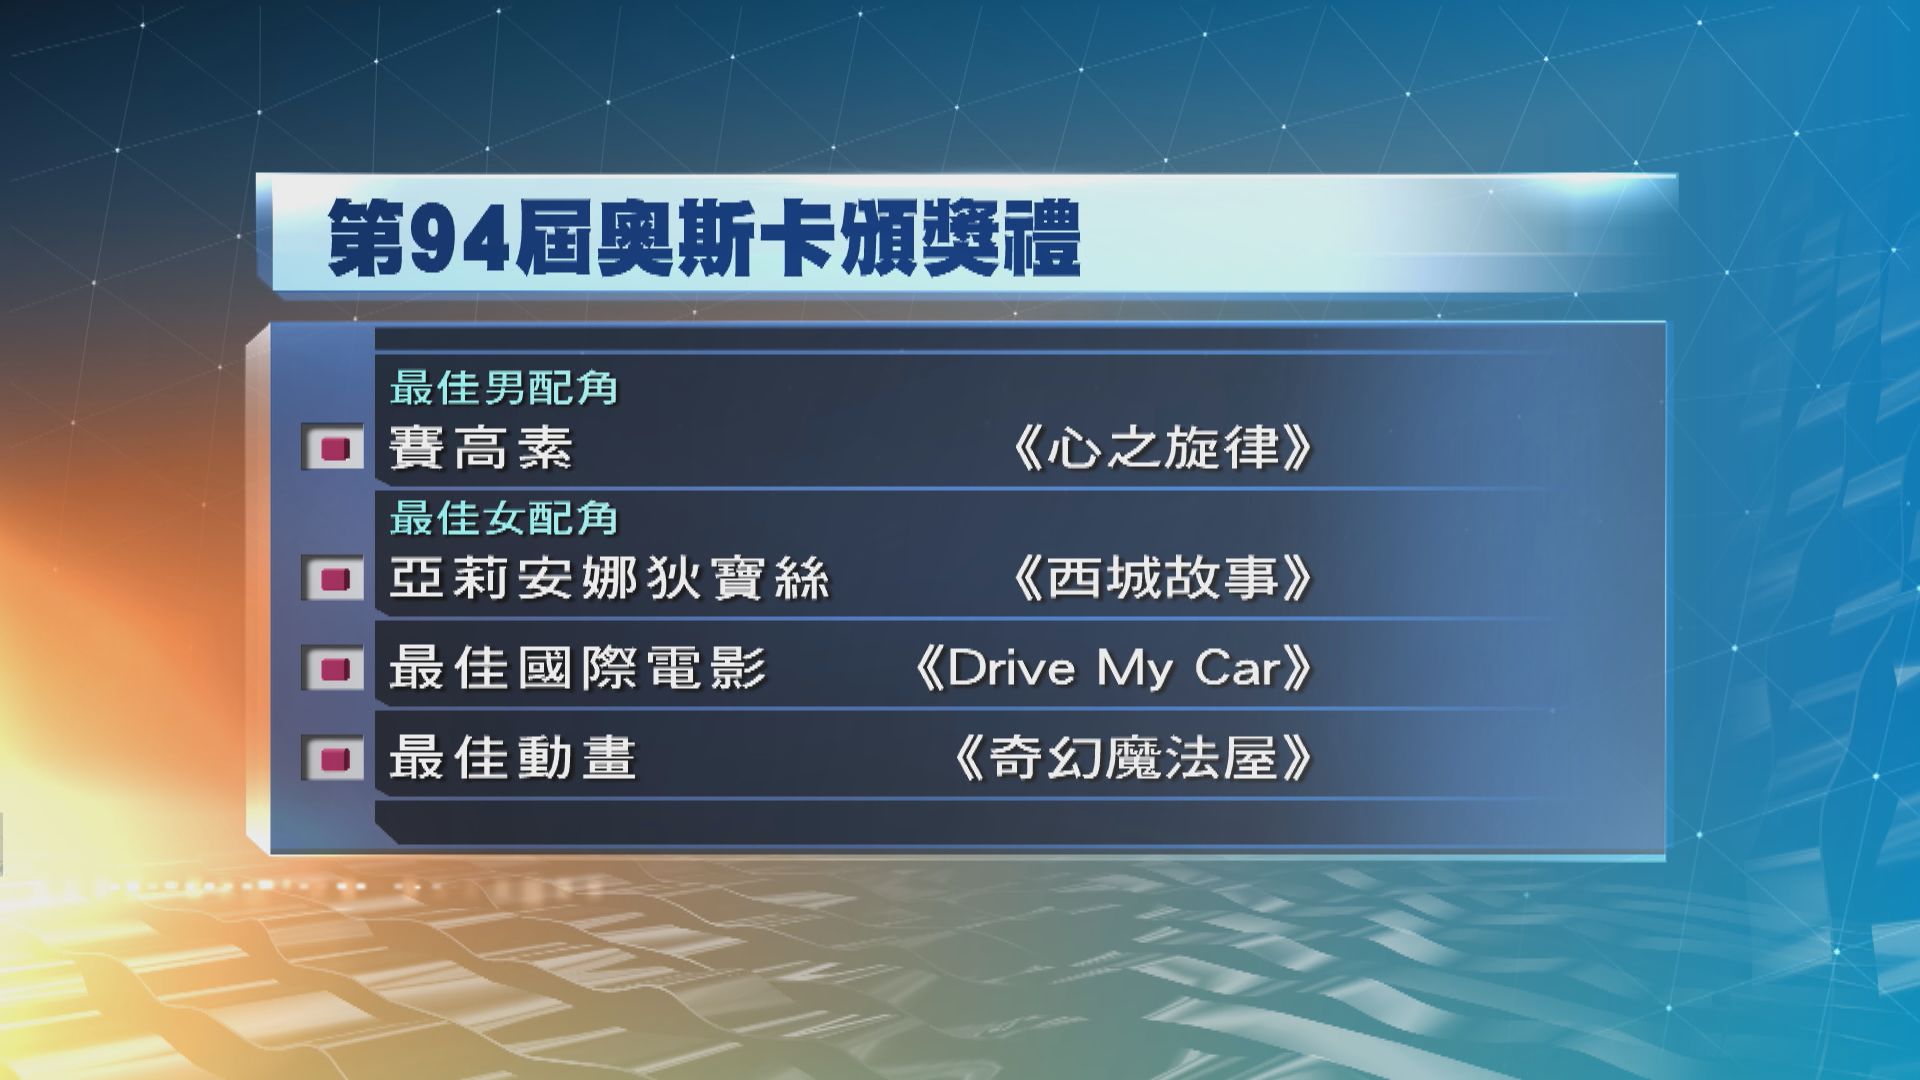 日本電影Drive My Car奪奧斯卡最佳國際電影獎